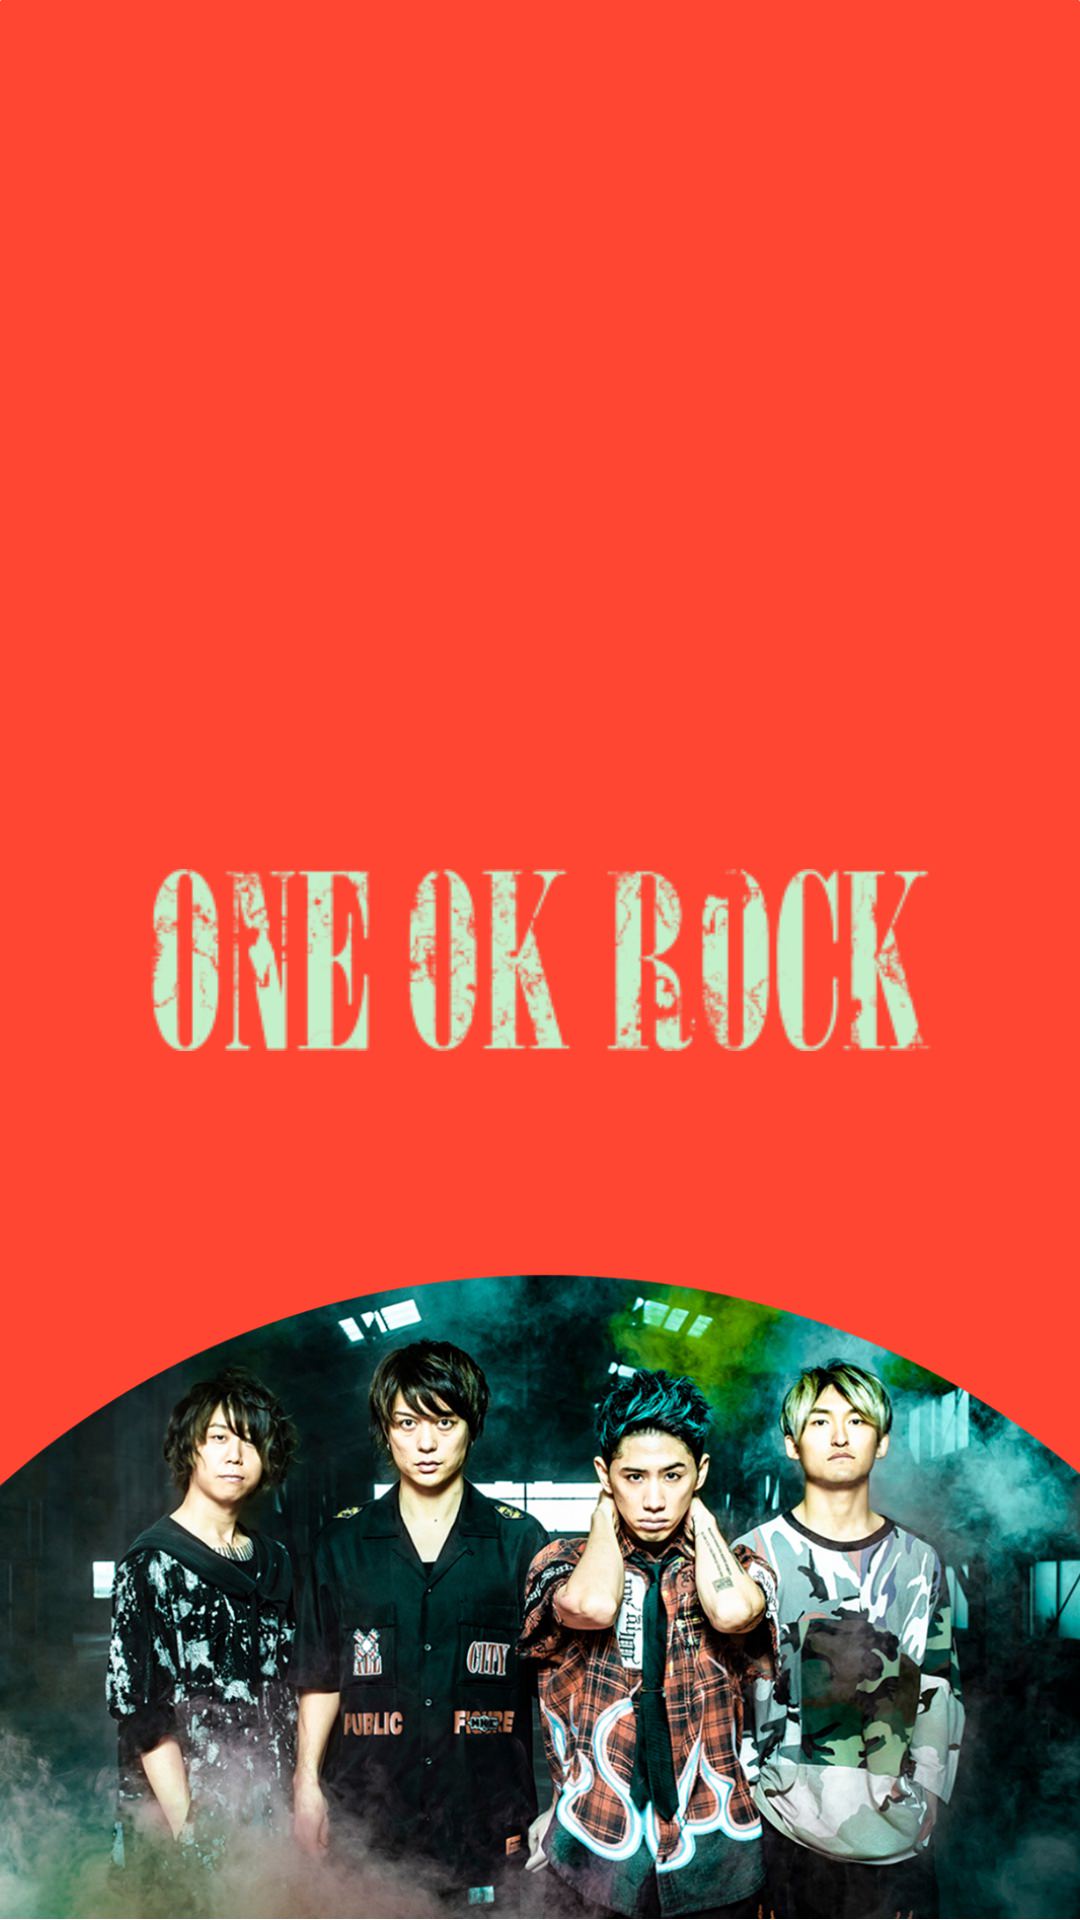 壁紙 One Ok Rock 無料ダウンロードhd壁紙画像